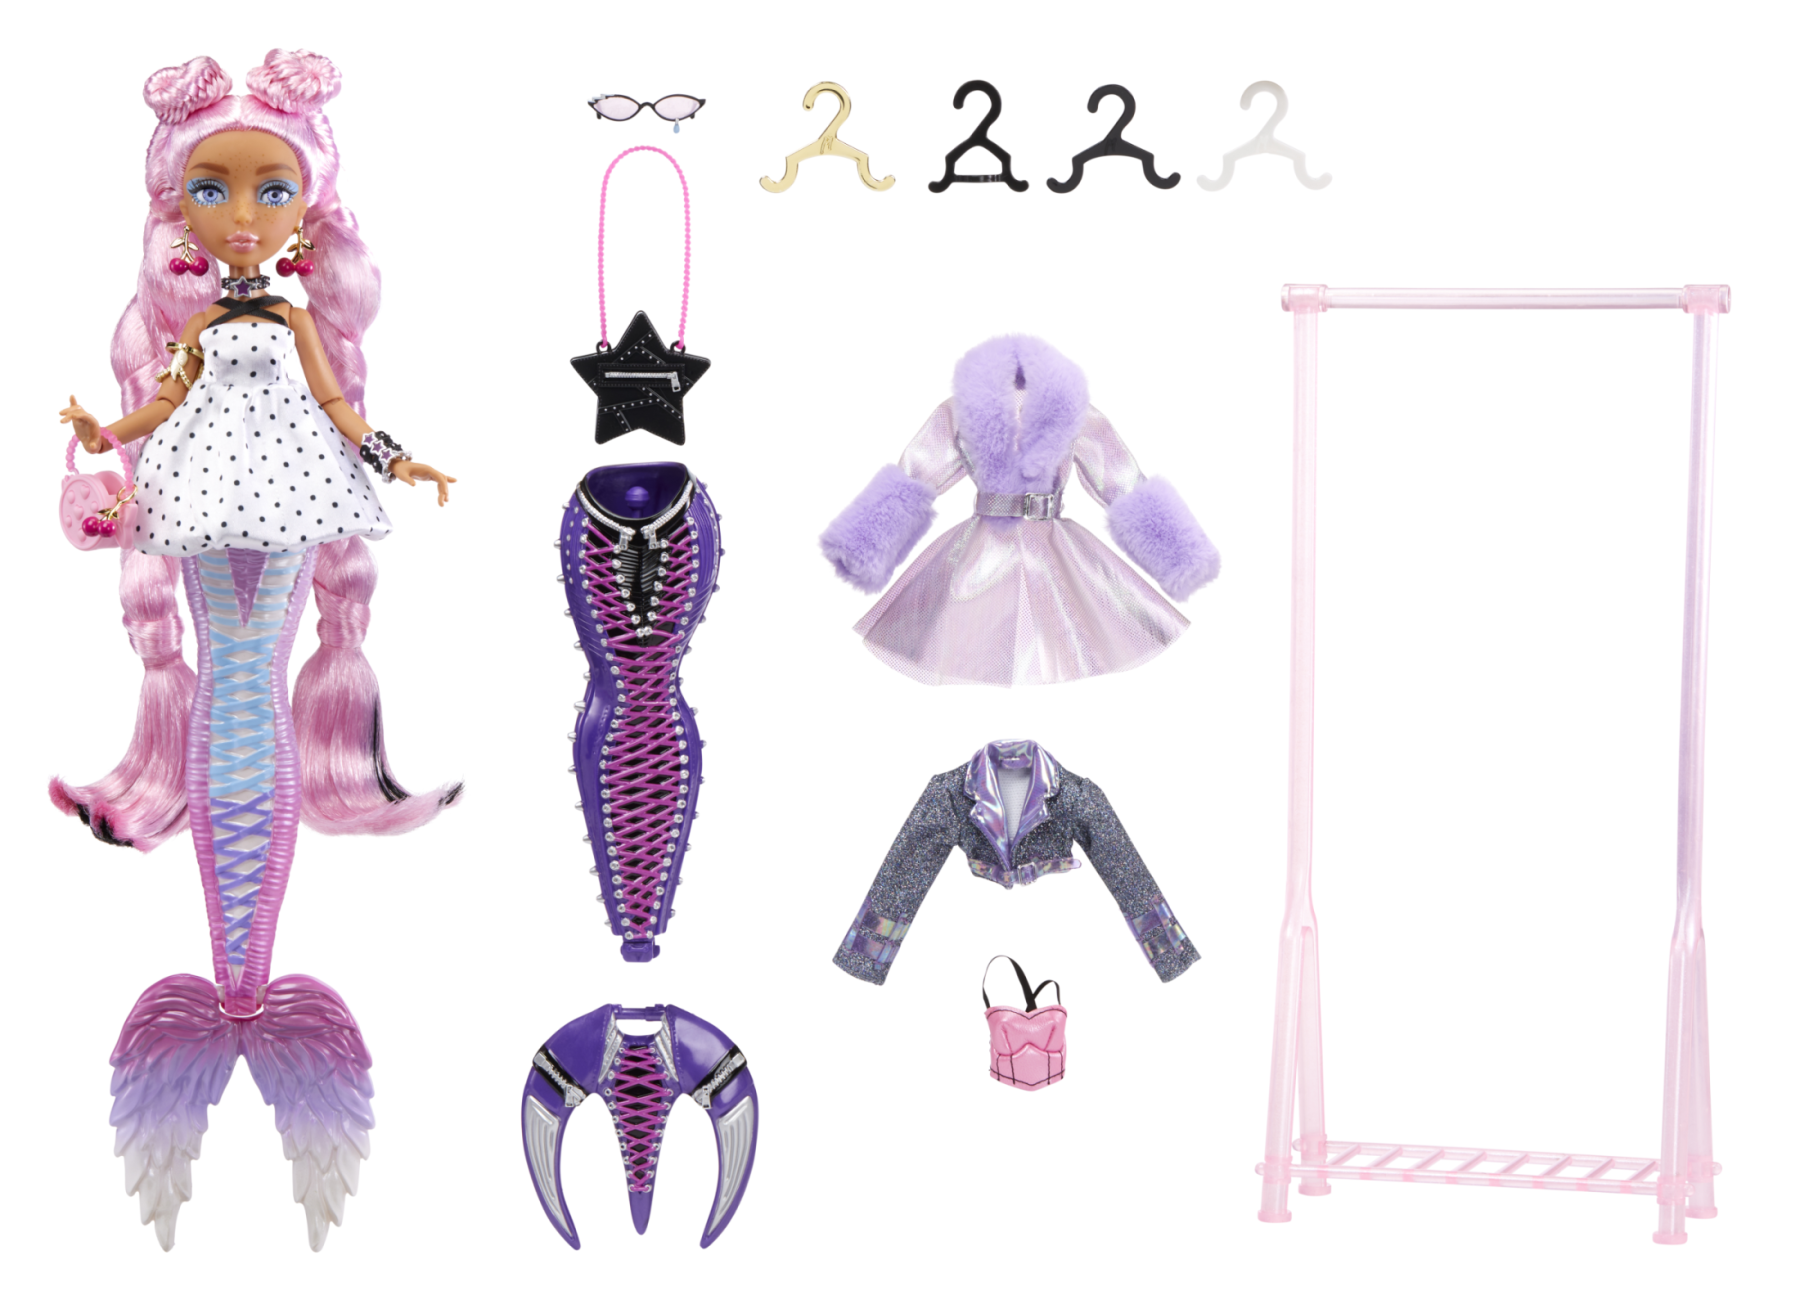 Mermaze mermaidz fashion fins - morra - include bambola alla moda personalizzabile con coda mix & match, pinna che cambia colore - MERMEIDZ